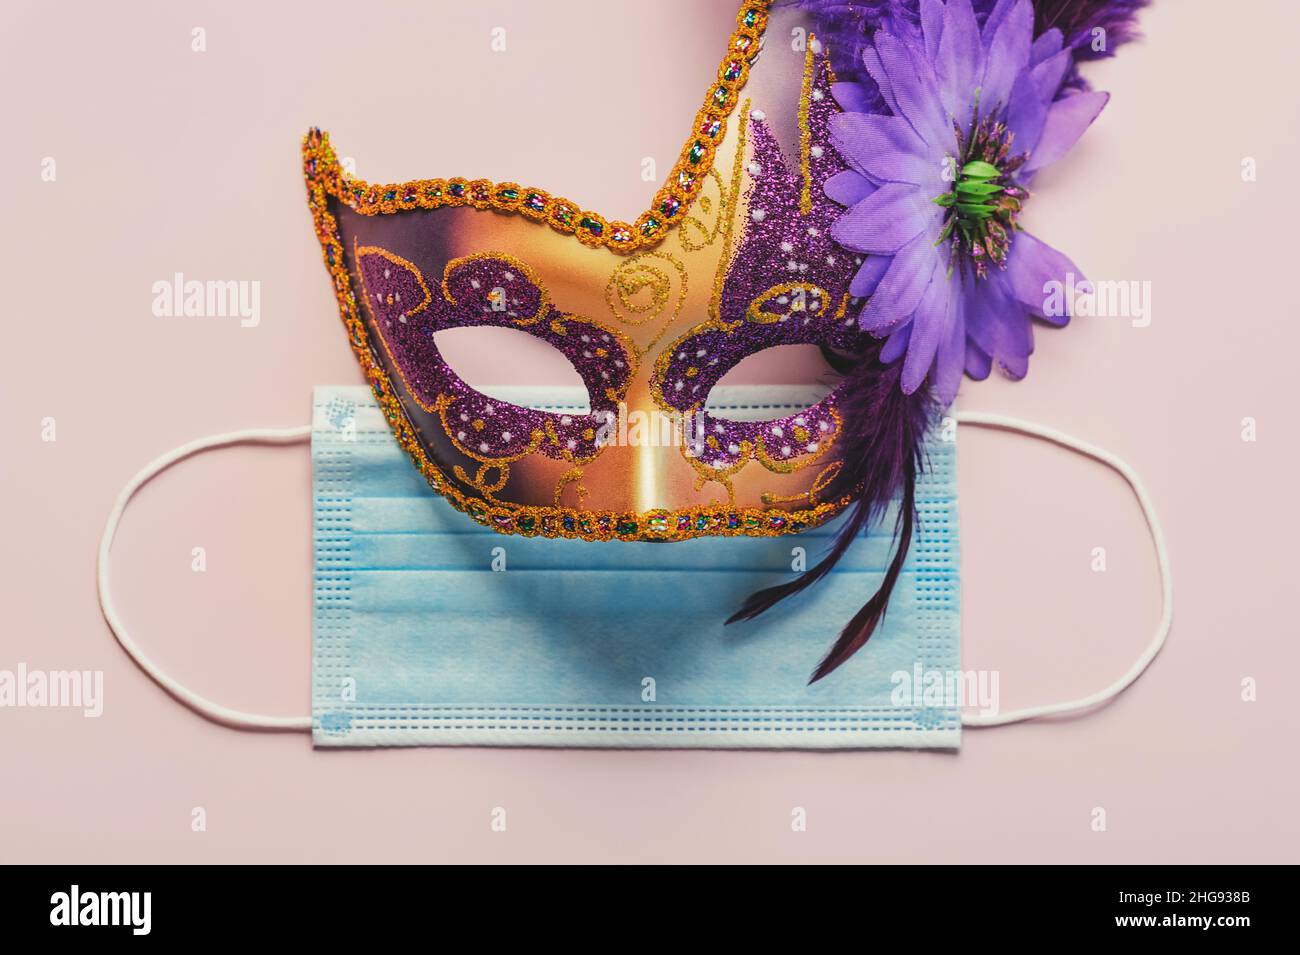 Konzept des Karnevals während des Covid-19. Venezianische Karnevalsmaske mit schützender OP-Maske auf hellem Hintergrund. Konzept der Karnevalsfeier Stockfoto